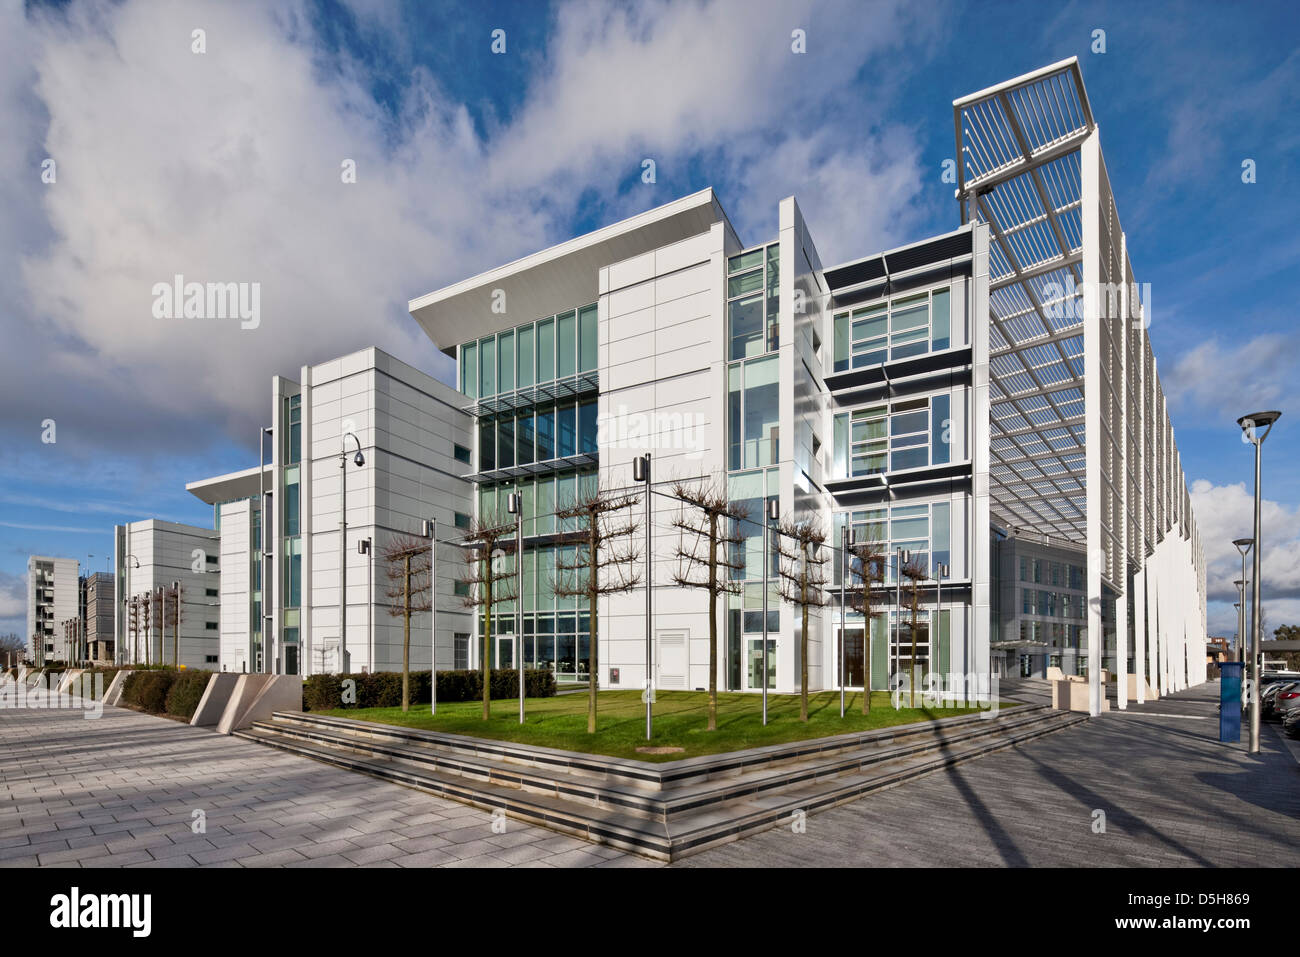 Le quadrant:MK, Milton Keynes, Royaume-Uni. Architecte : GMW Architectes, 2012. Au sud-ouest/ sud-est montrant paysag Banque D'Images